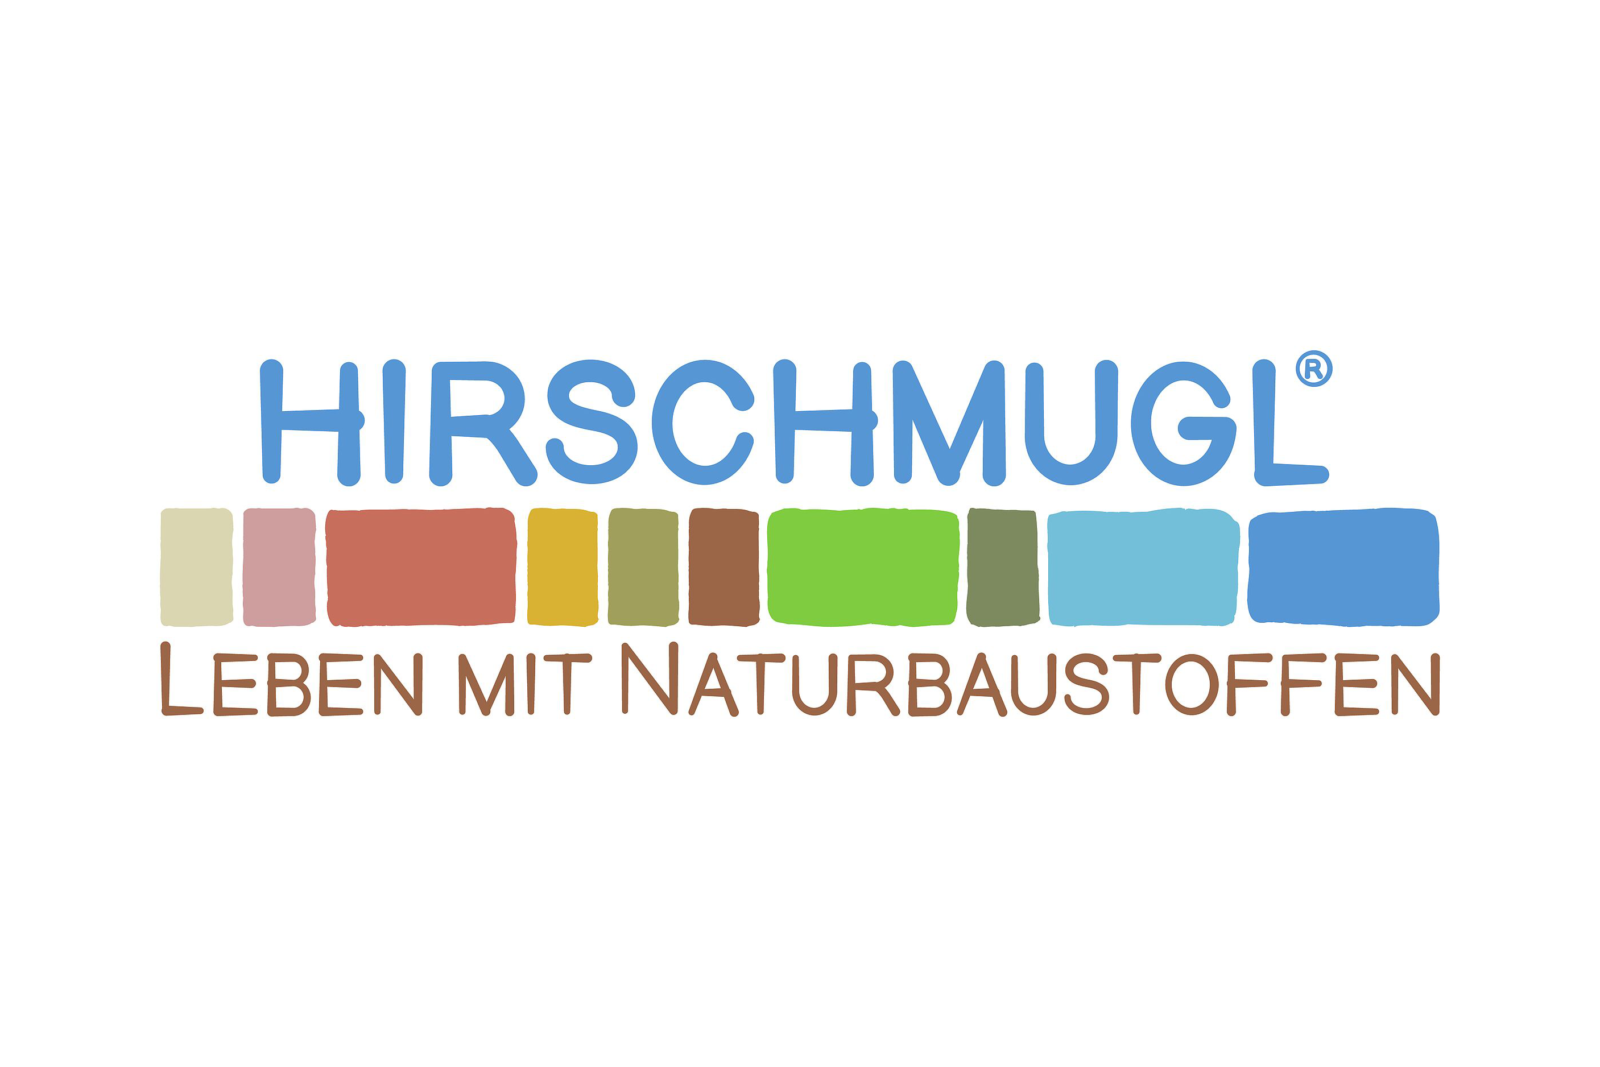 Hirschmugl - Leben mit Naturbaustoffen